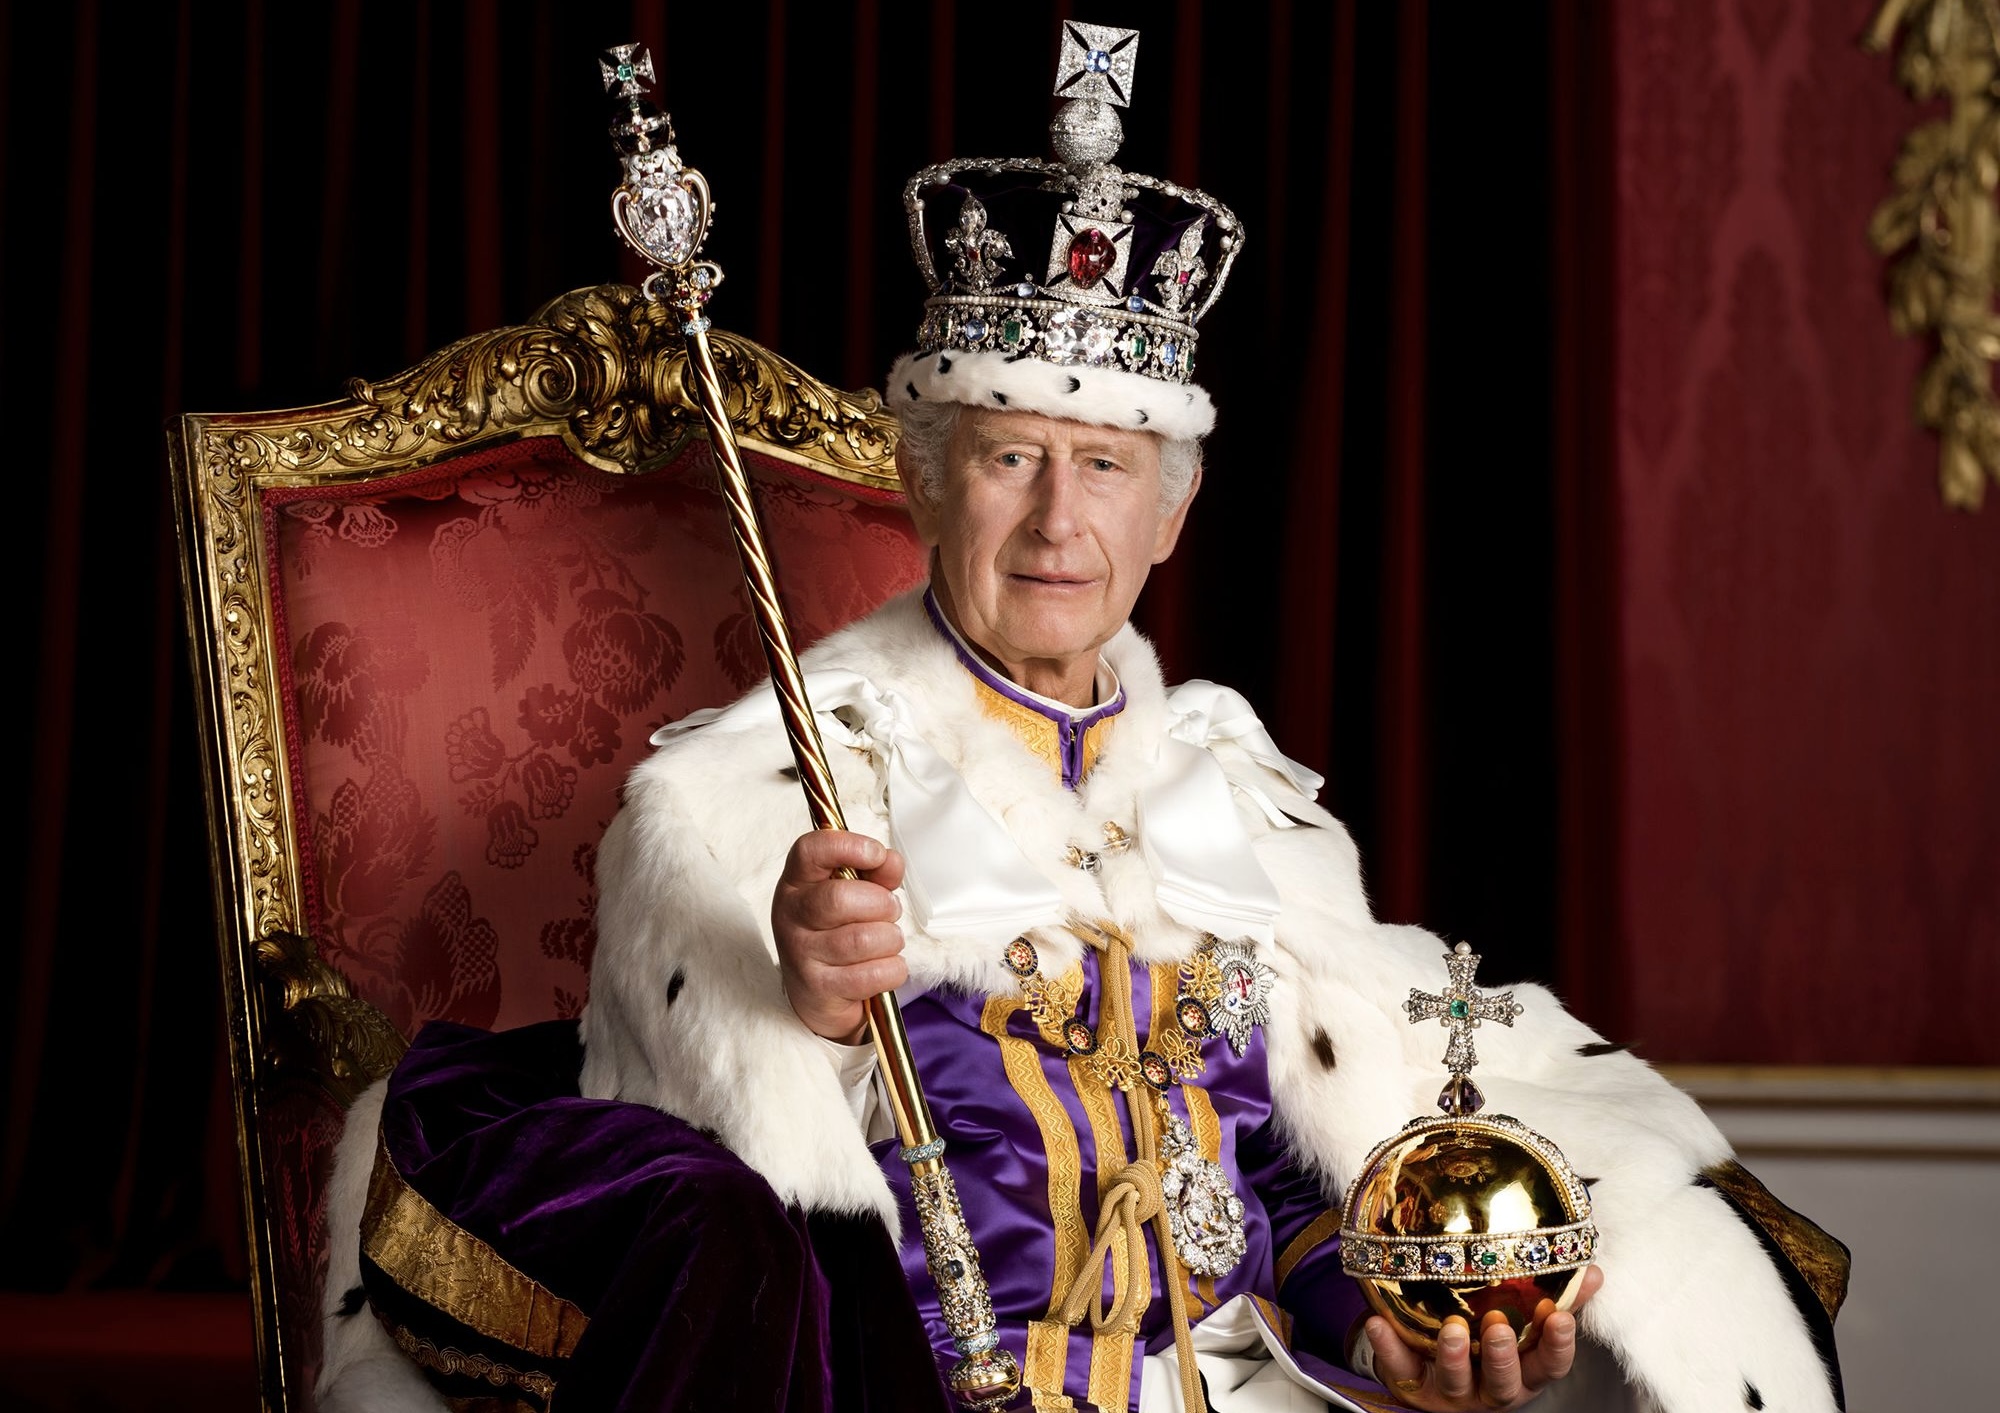 “Mbreti Charles është në gjendje jo të mirë”, thonë burimet pranë pallatit